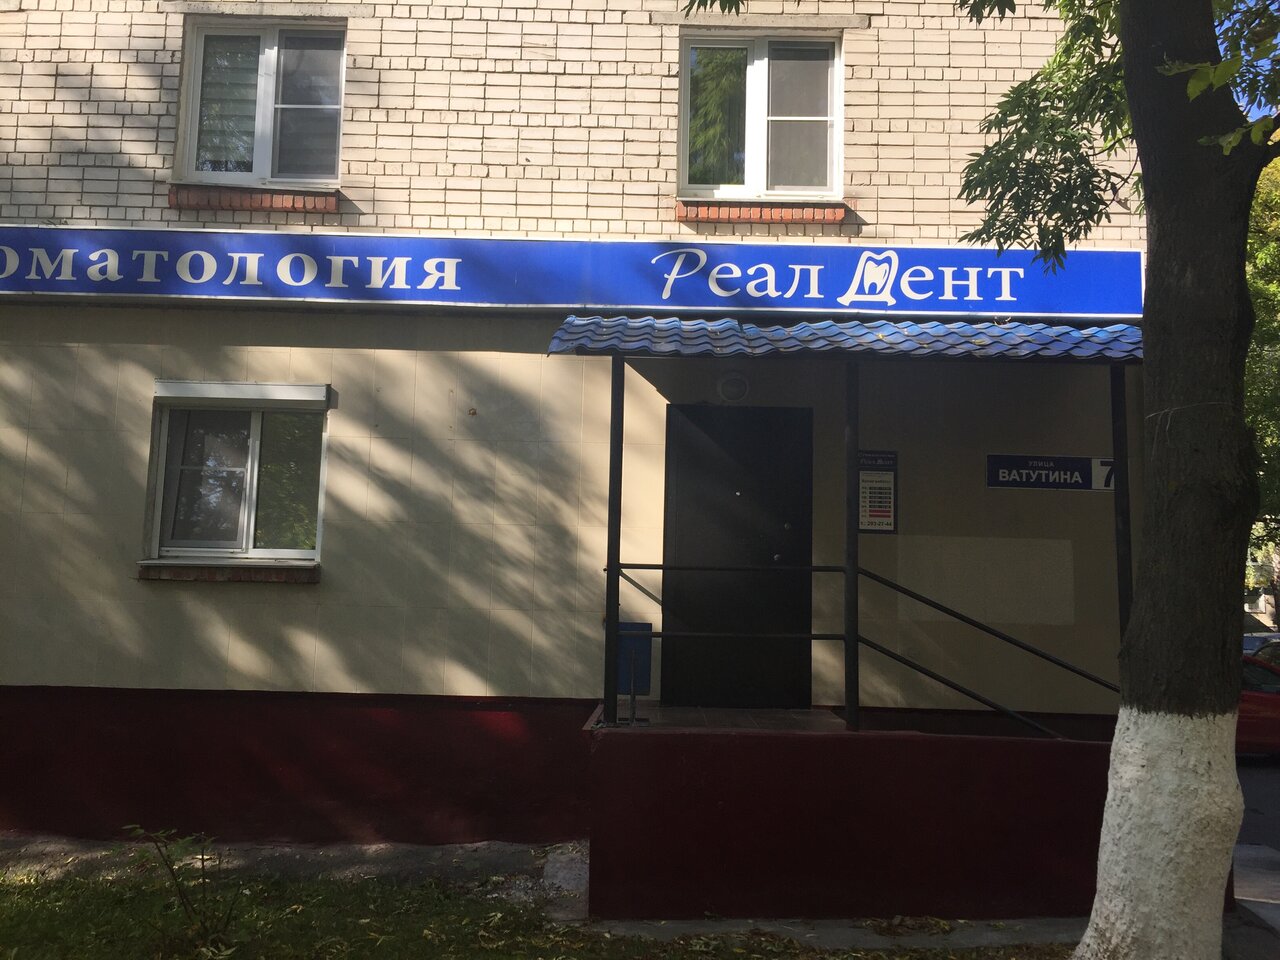 Стоматологическая клиника РеалДент, Нижний Новгород, ул. Ватутина, 7